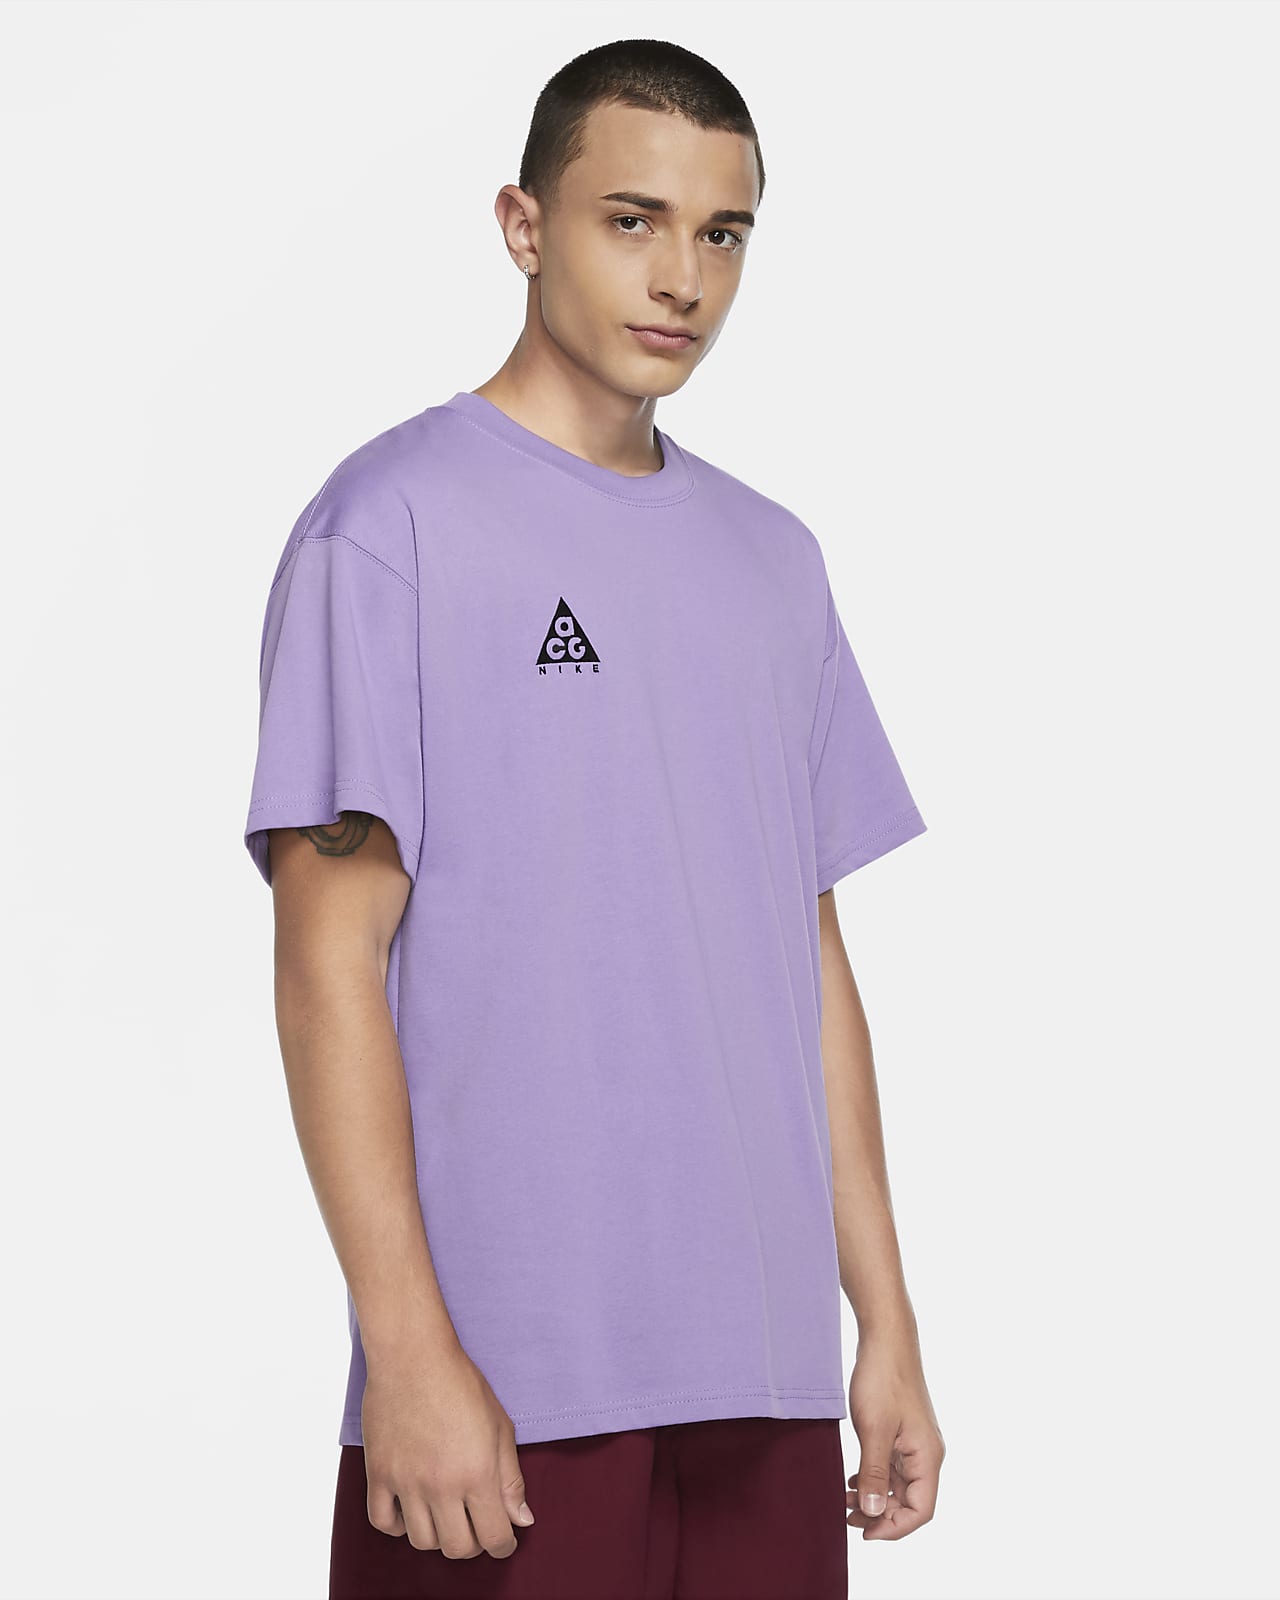 nike lavender shirt